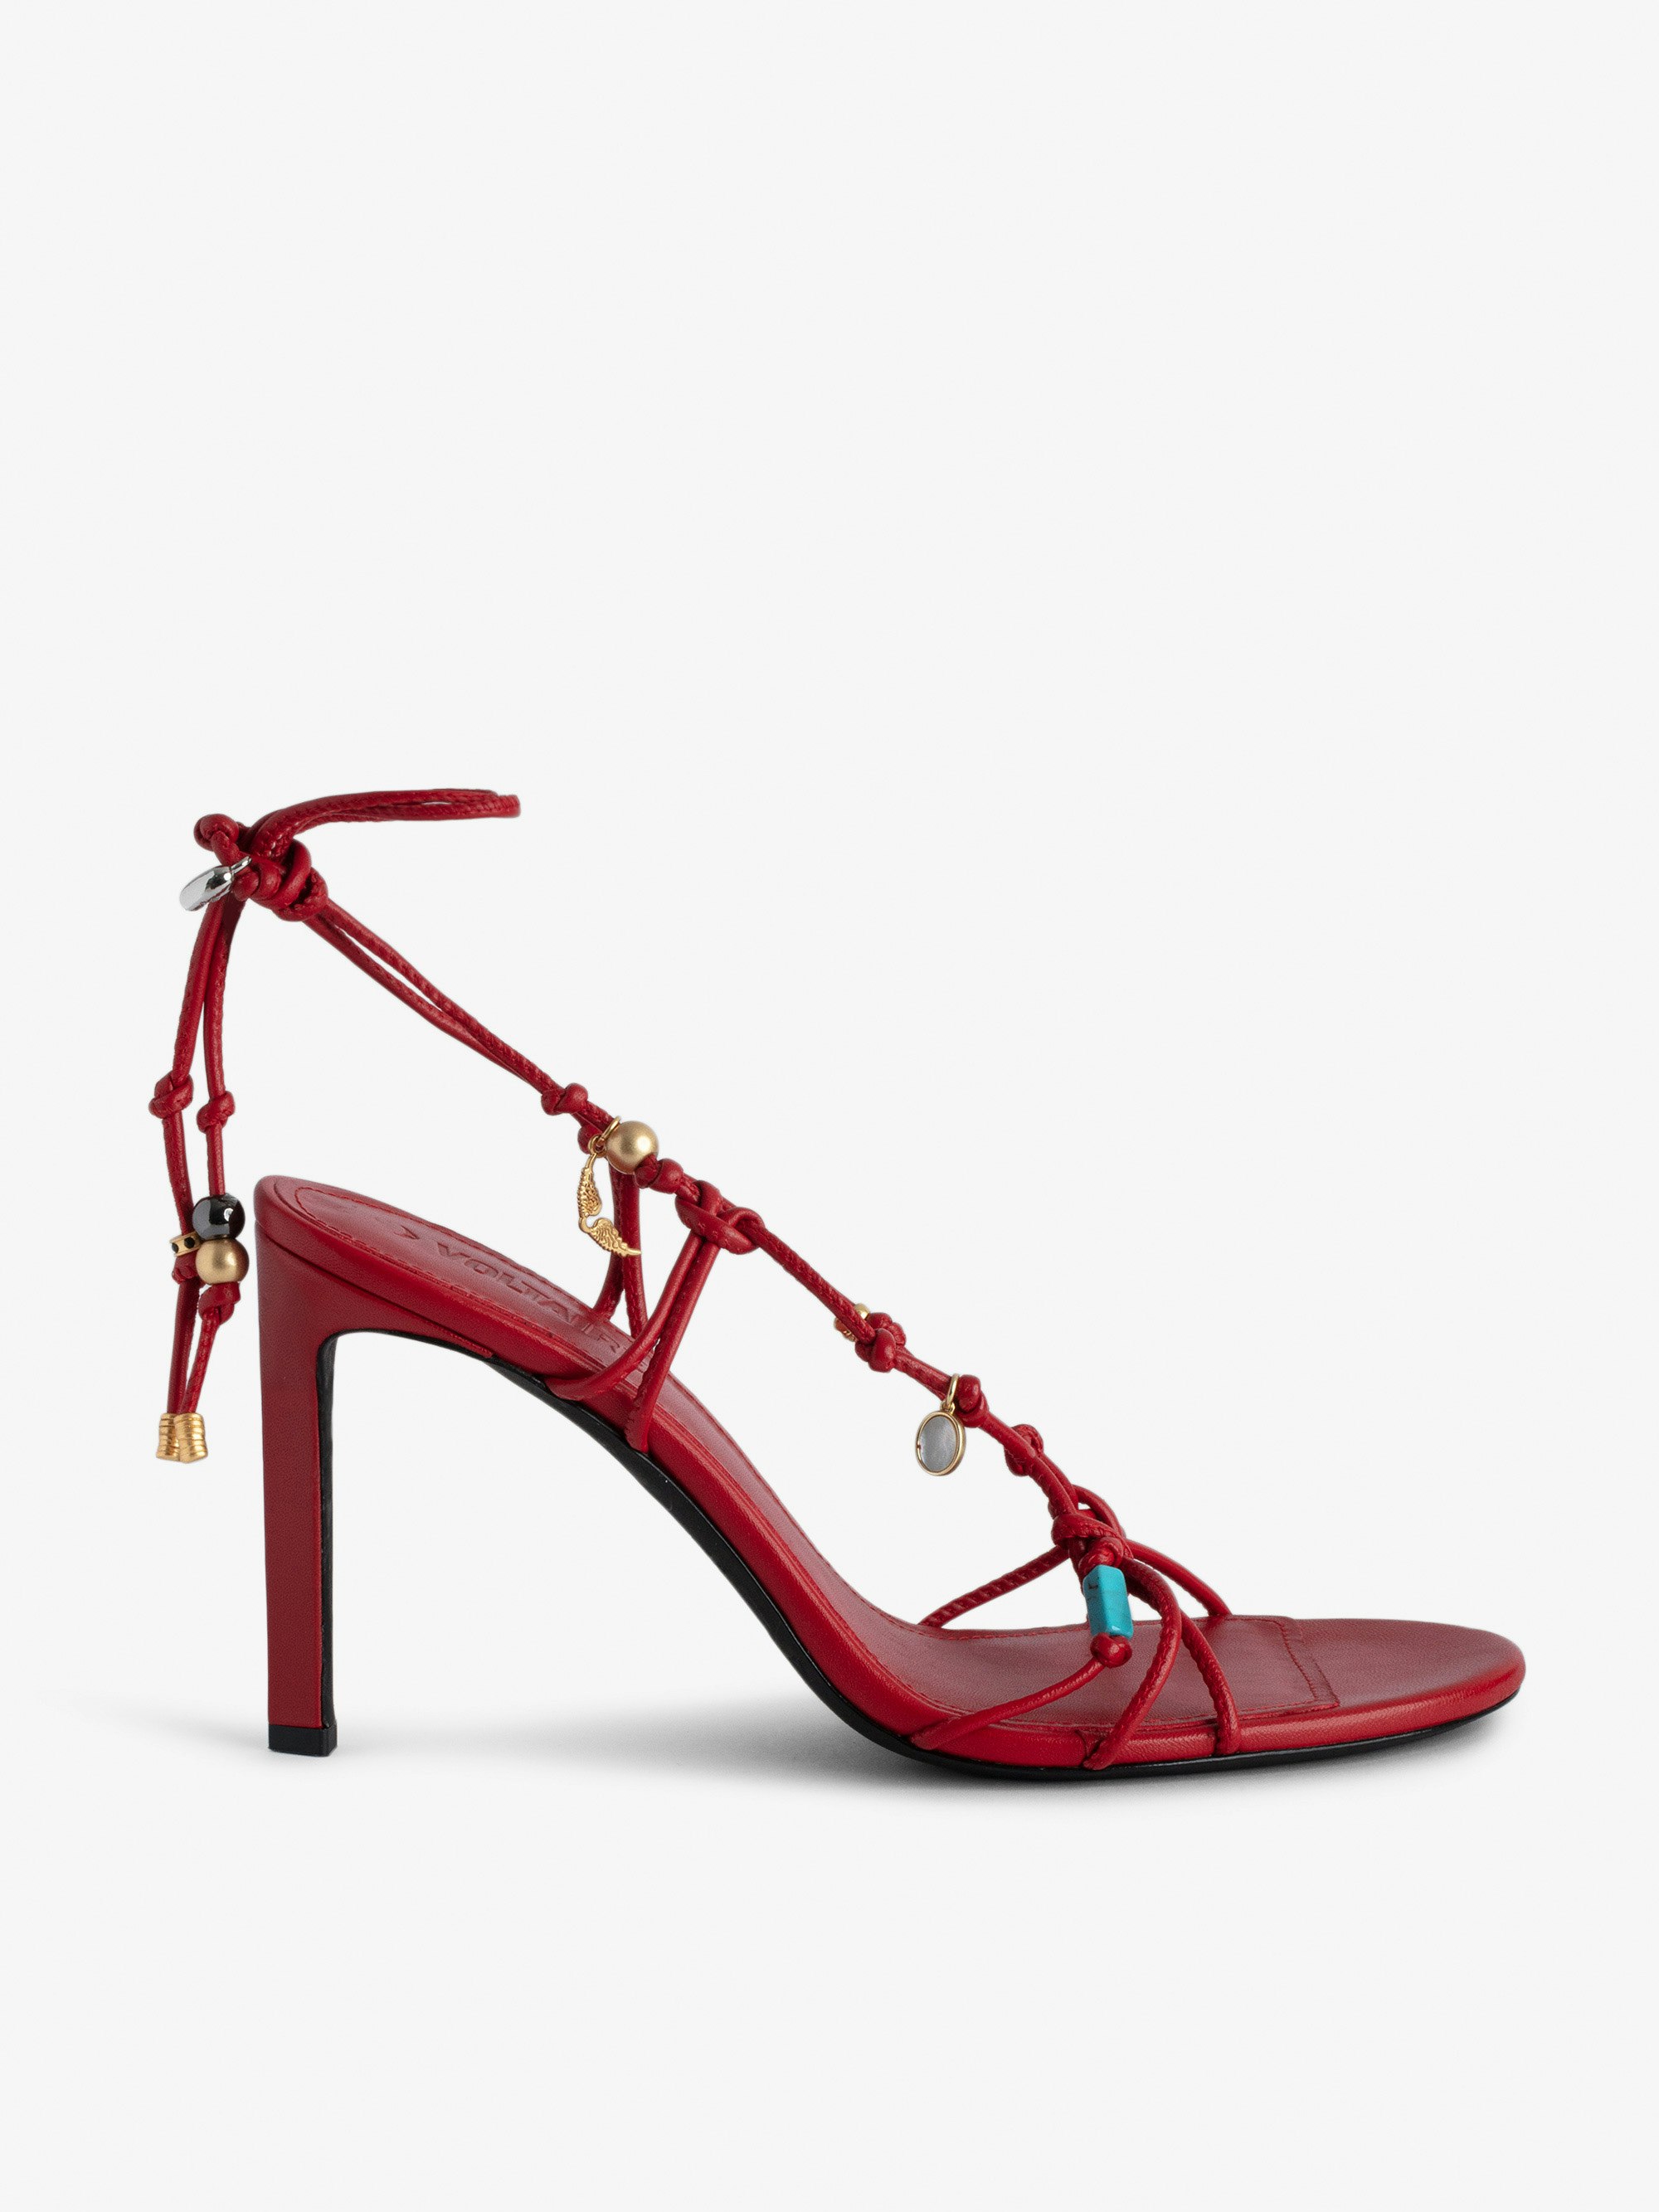 Sandalen Alana - Rote Sandalen mit Absatz aus Glattleder mit geflochtenen Riemen und Charms.